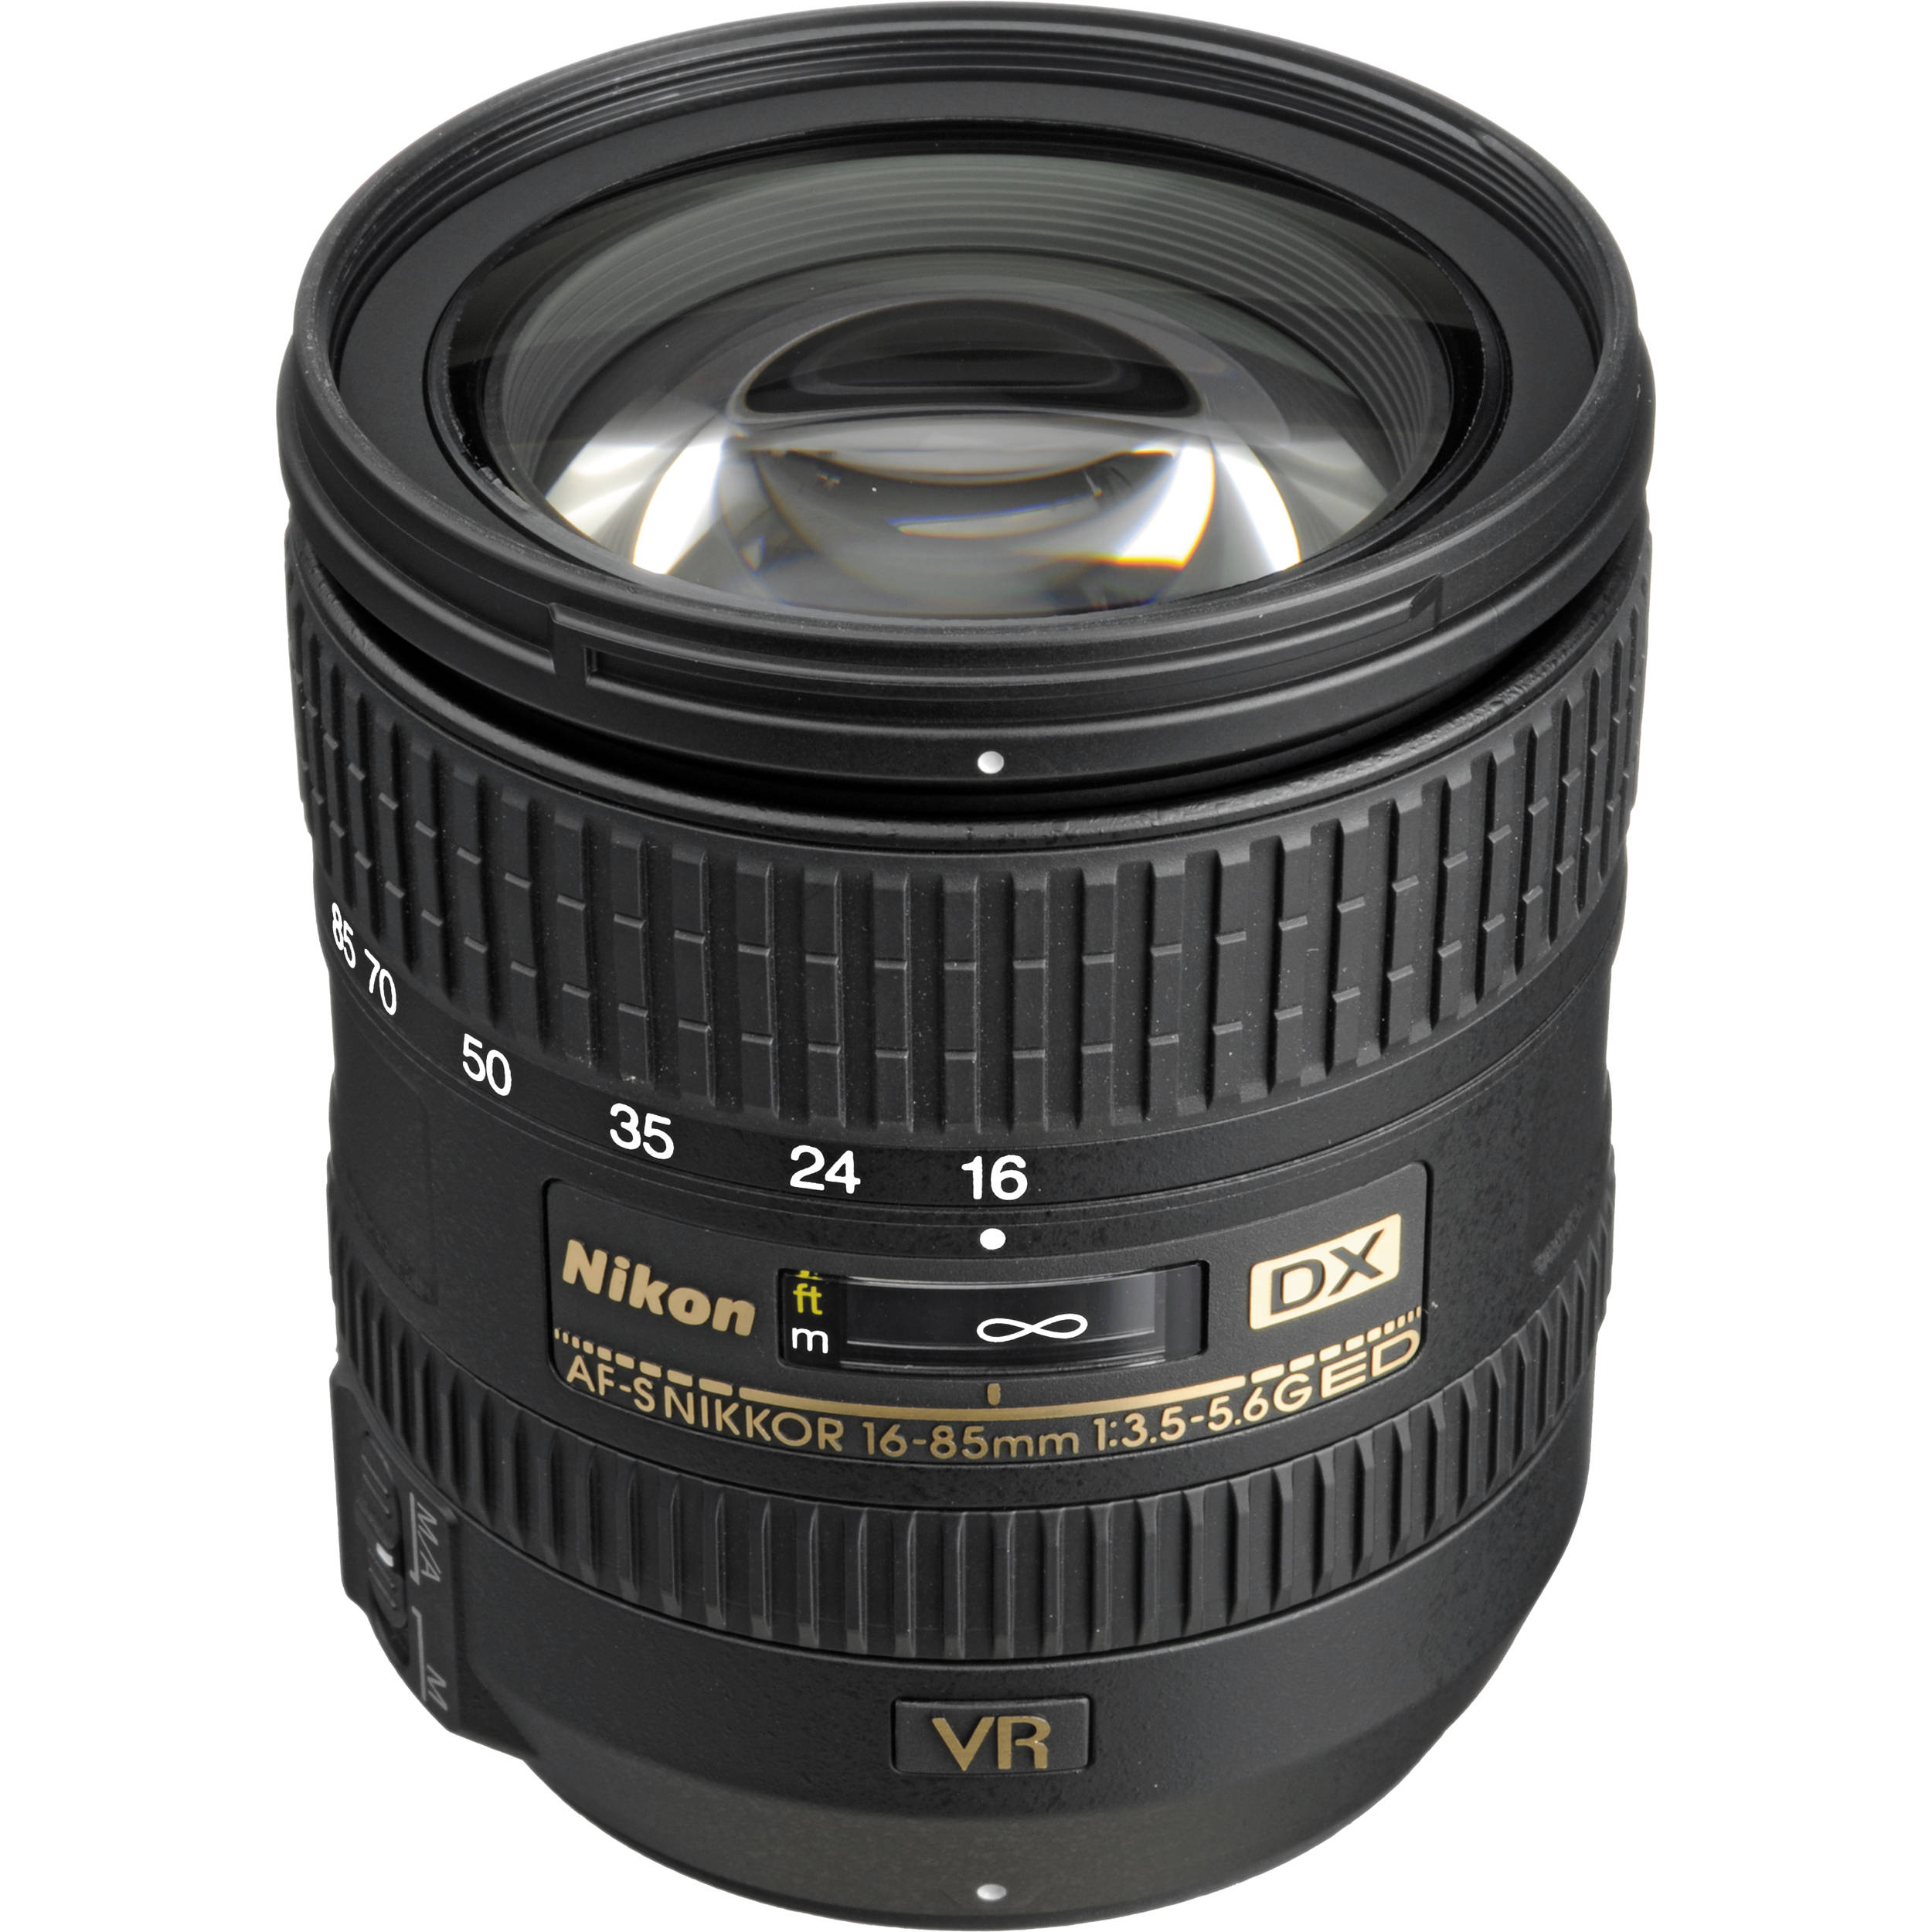 Nikon AF-S DX NIKKOR 16-85mm f/3.5-5.6G ED VR Lens 2178 B&H